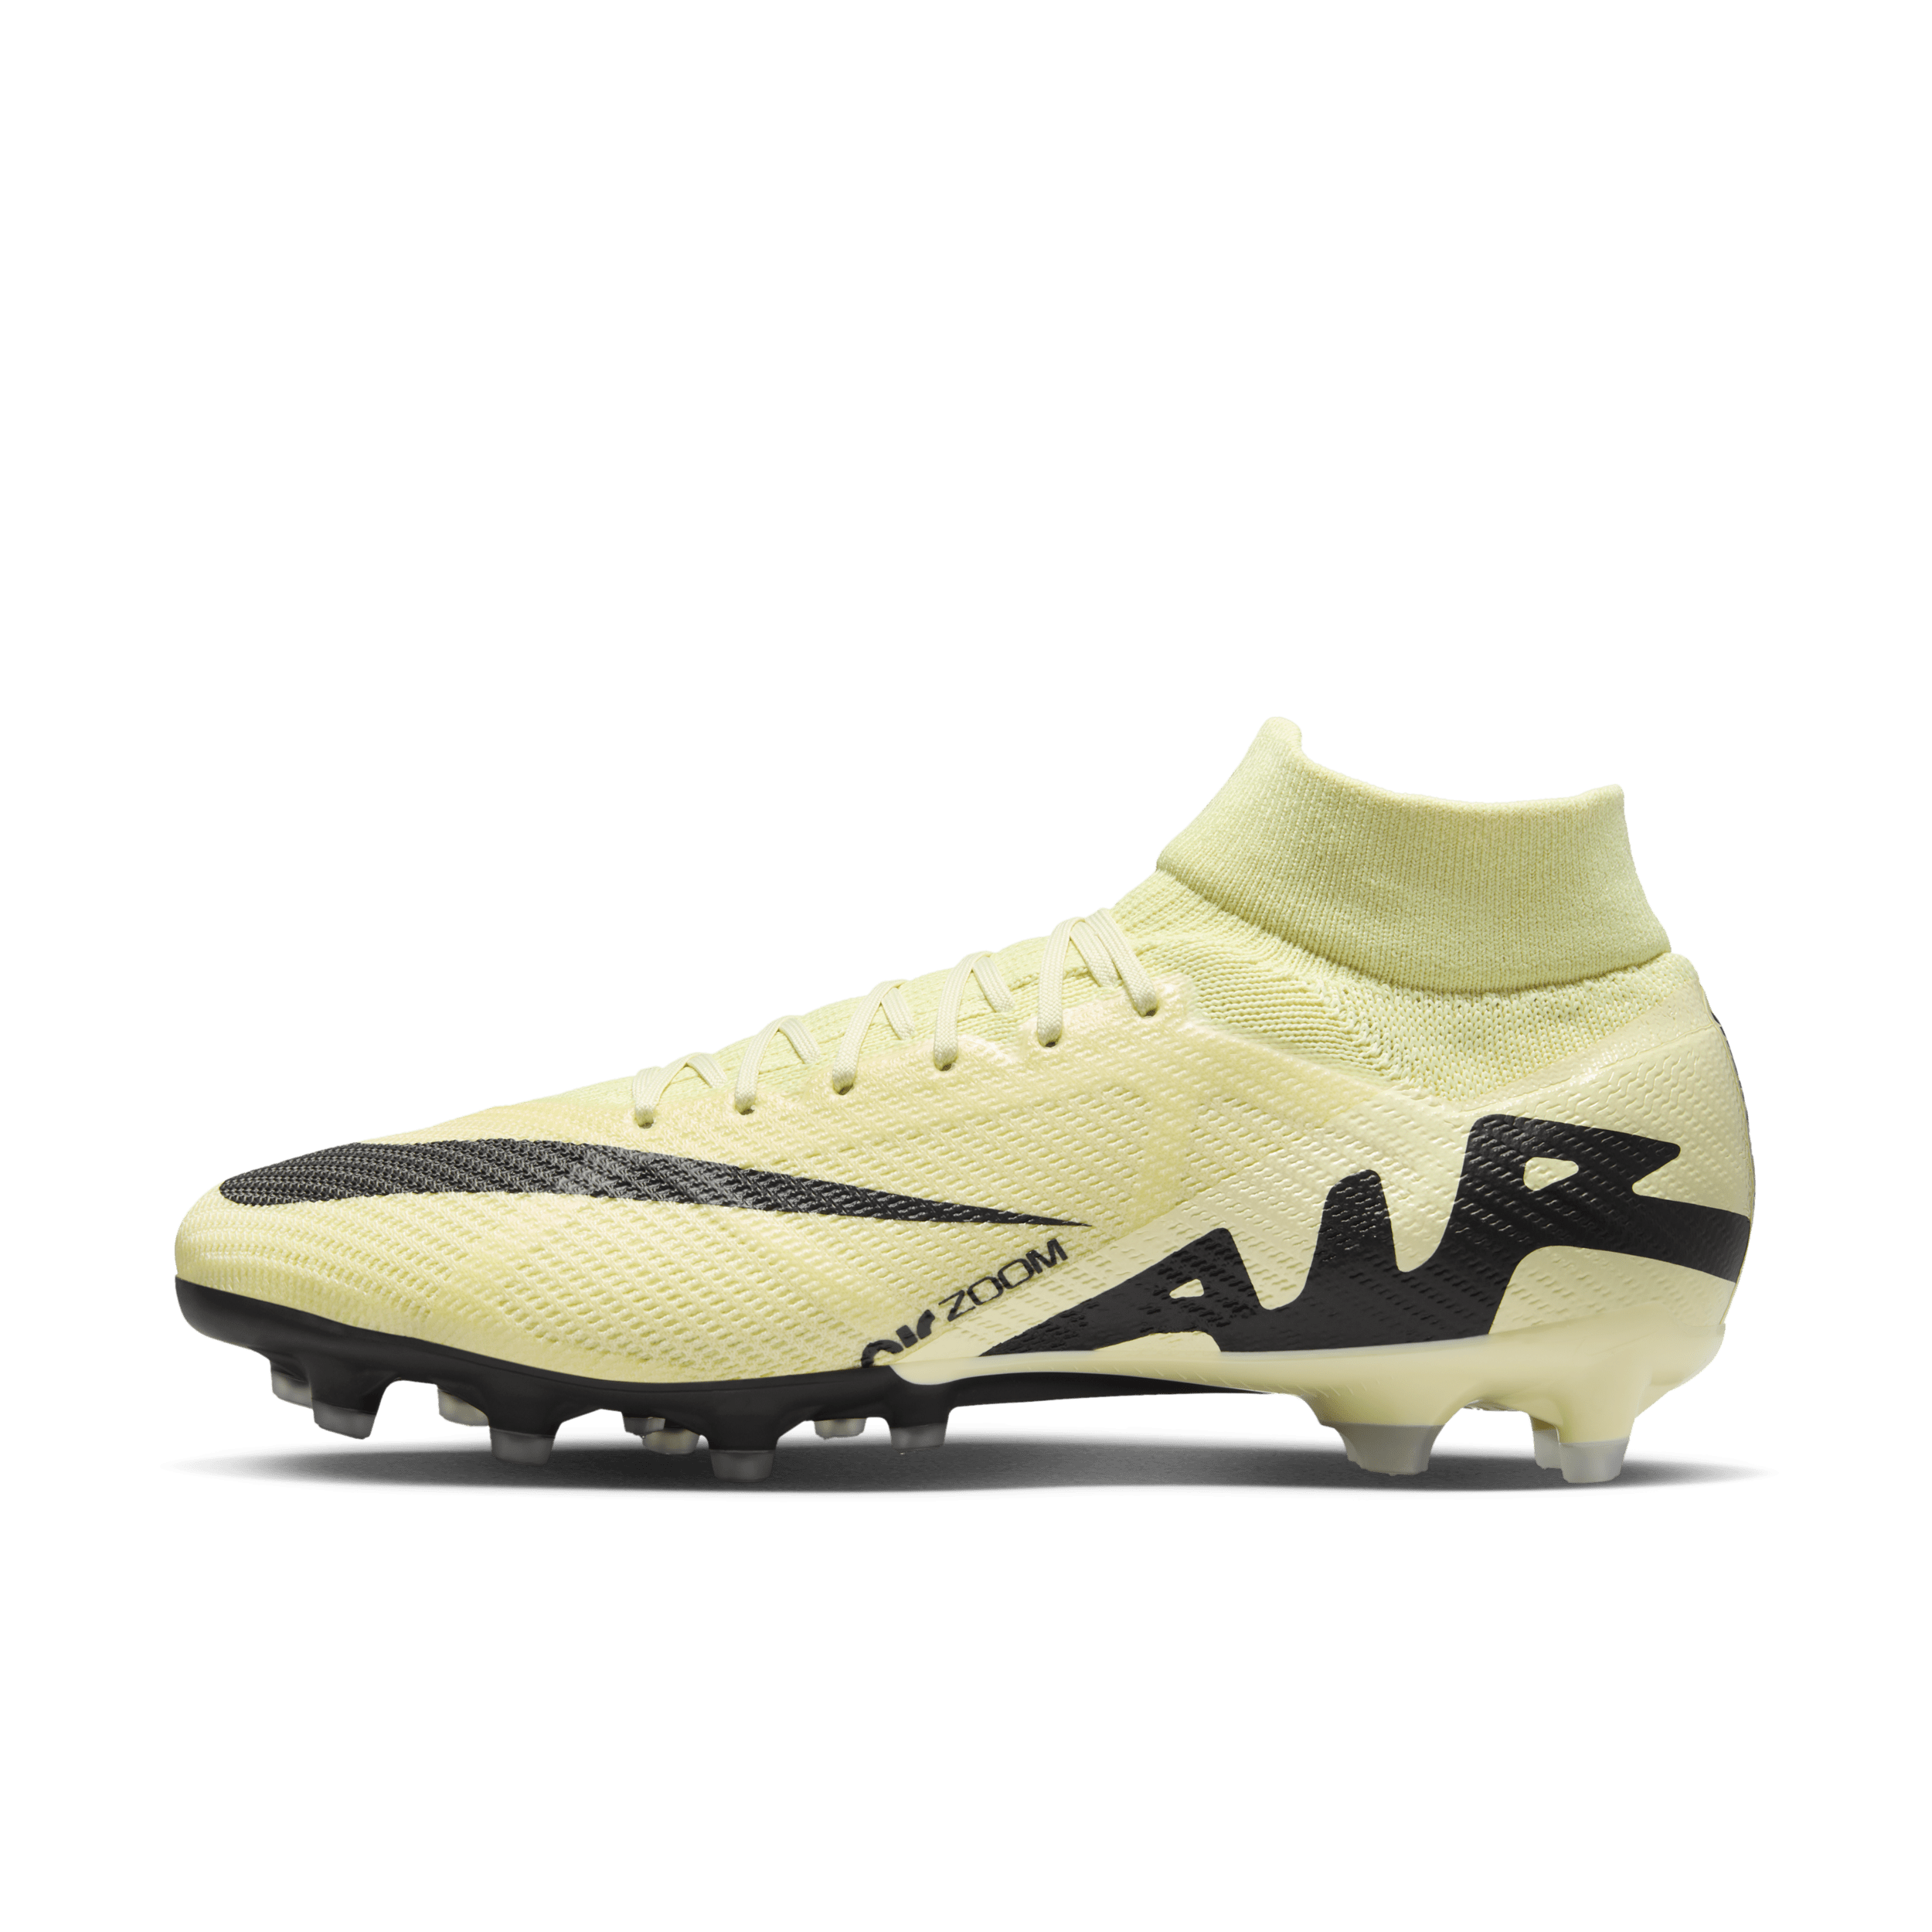 Nike Mercurial Superfly 9 Pro high top voetbalschoenen (kunstgras) - Geel